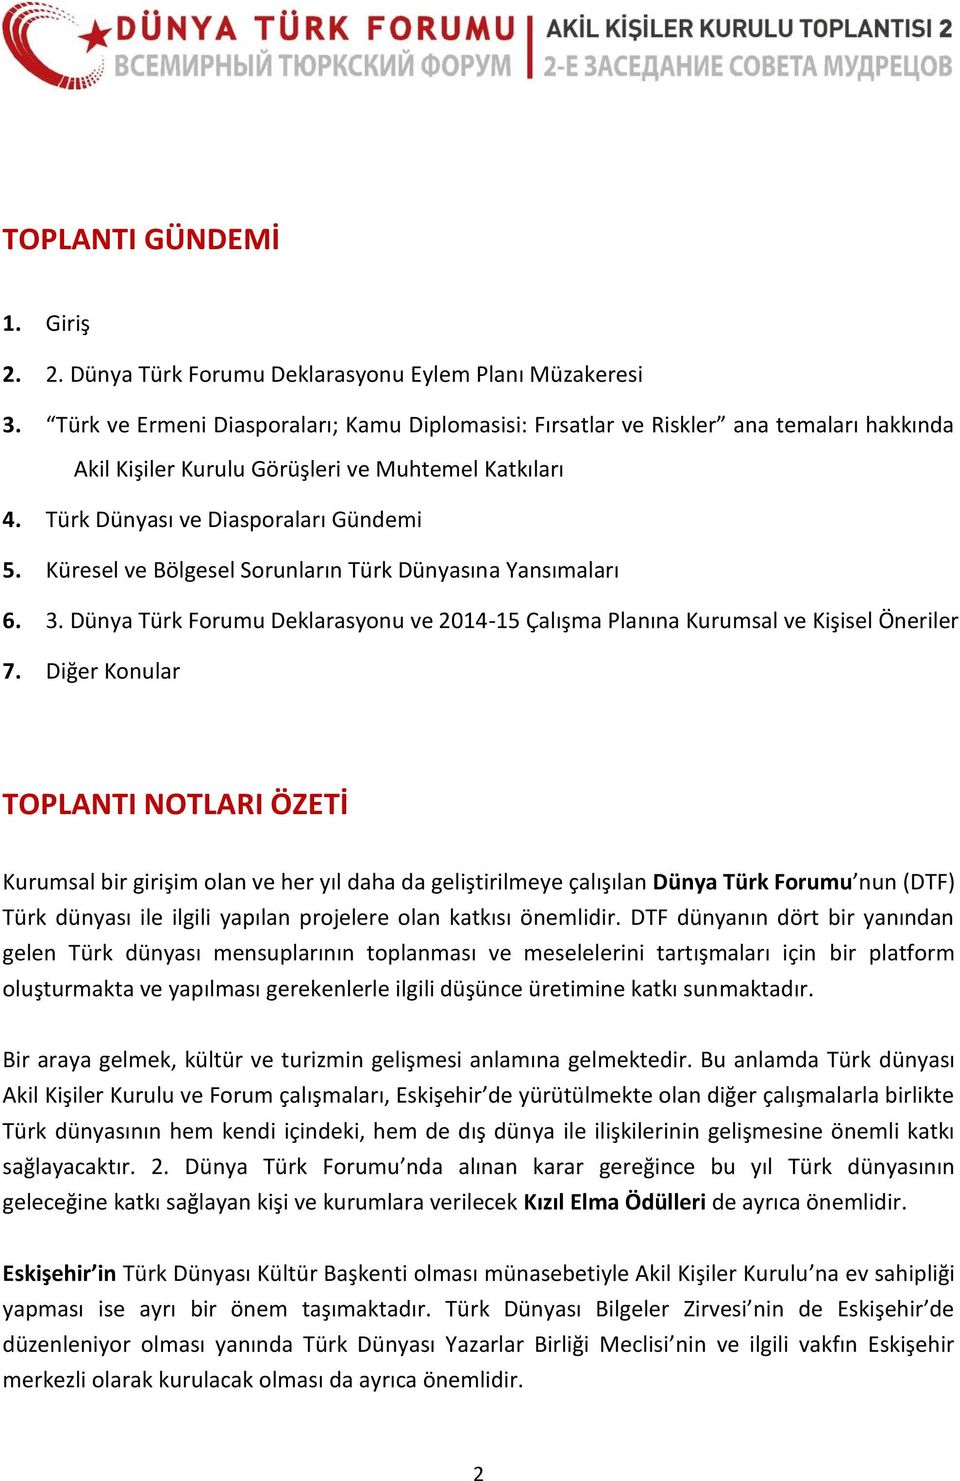 Küresel ve Bölgesel Sorunların Türk Dünyasına Yansımaları 6. 3. Dünya Türk Forumu Deklarasyonu ve 2014-15 Çalışma Planına Kurumsal ve Kişisel Öneriler 7.